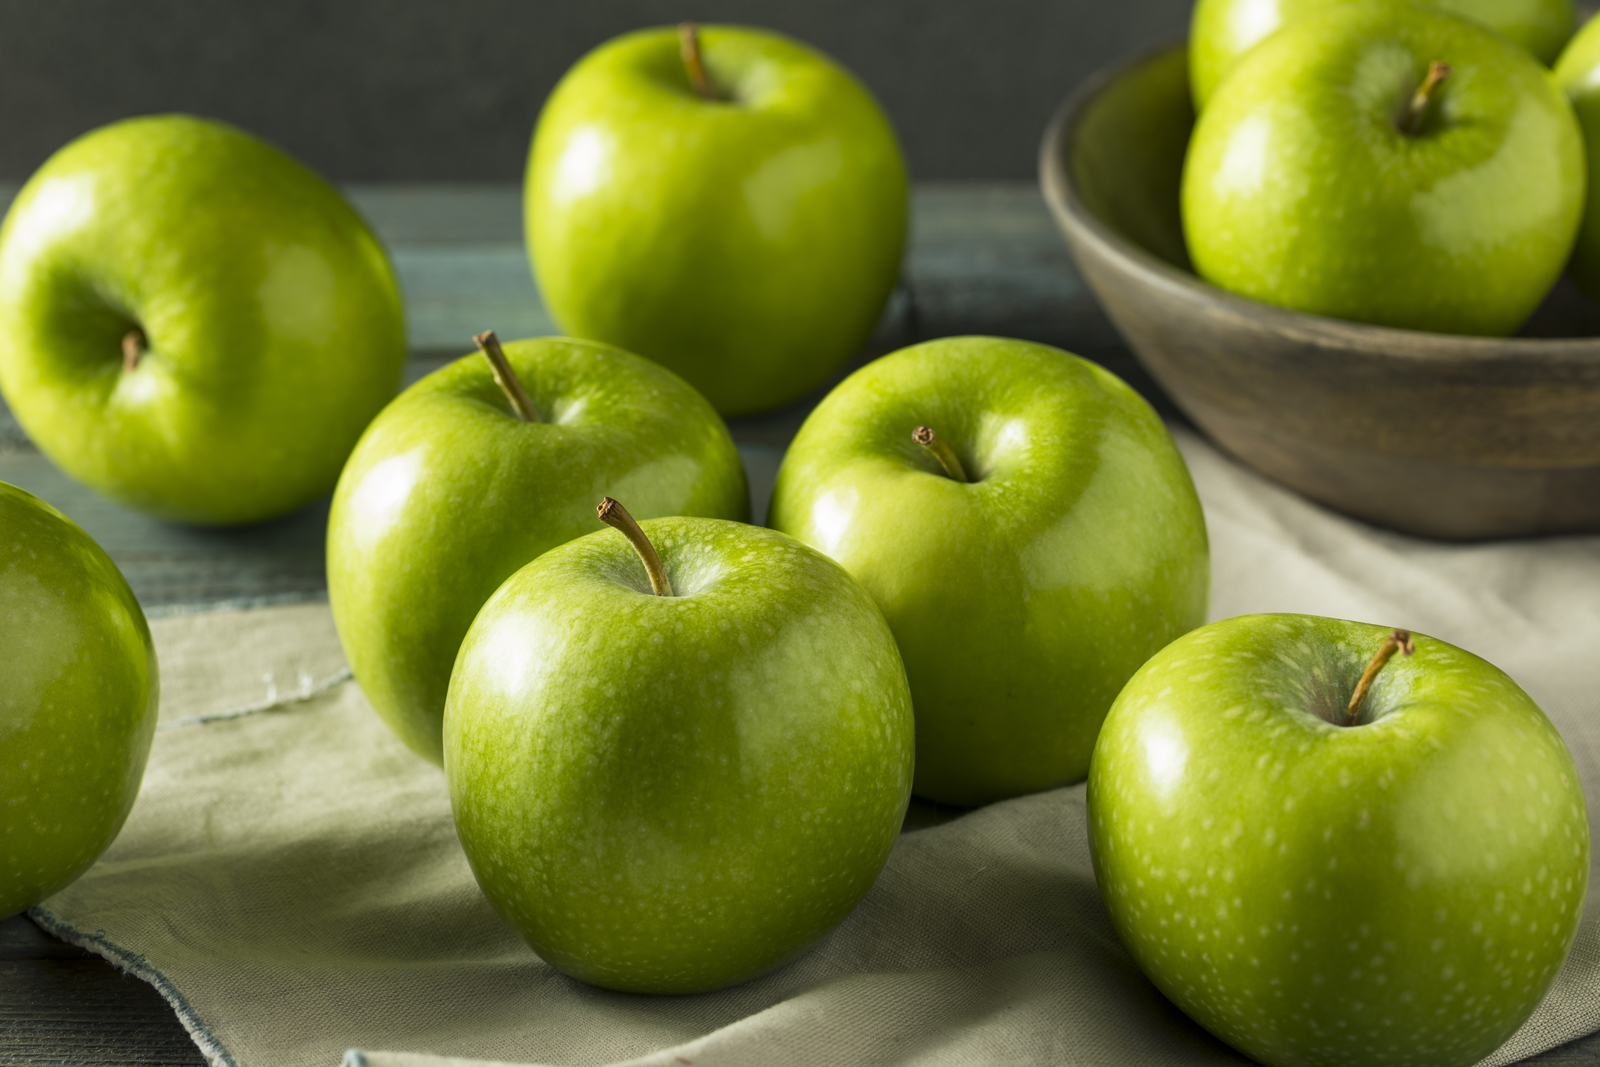 تفسير حلم التفاح الأخضر للعزباء